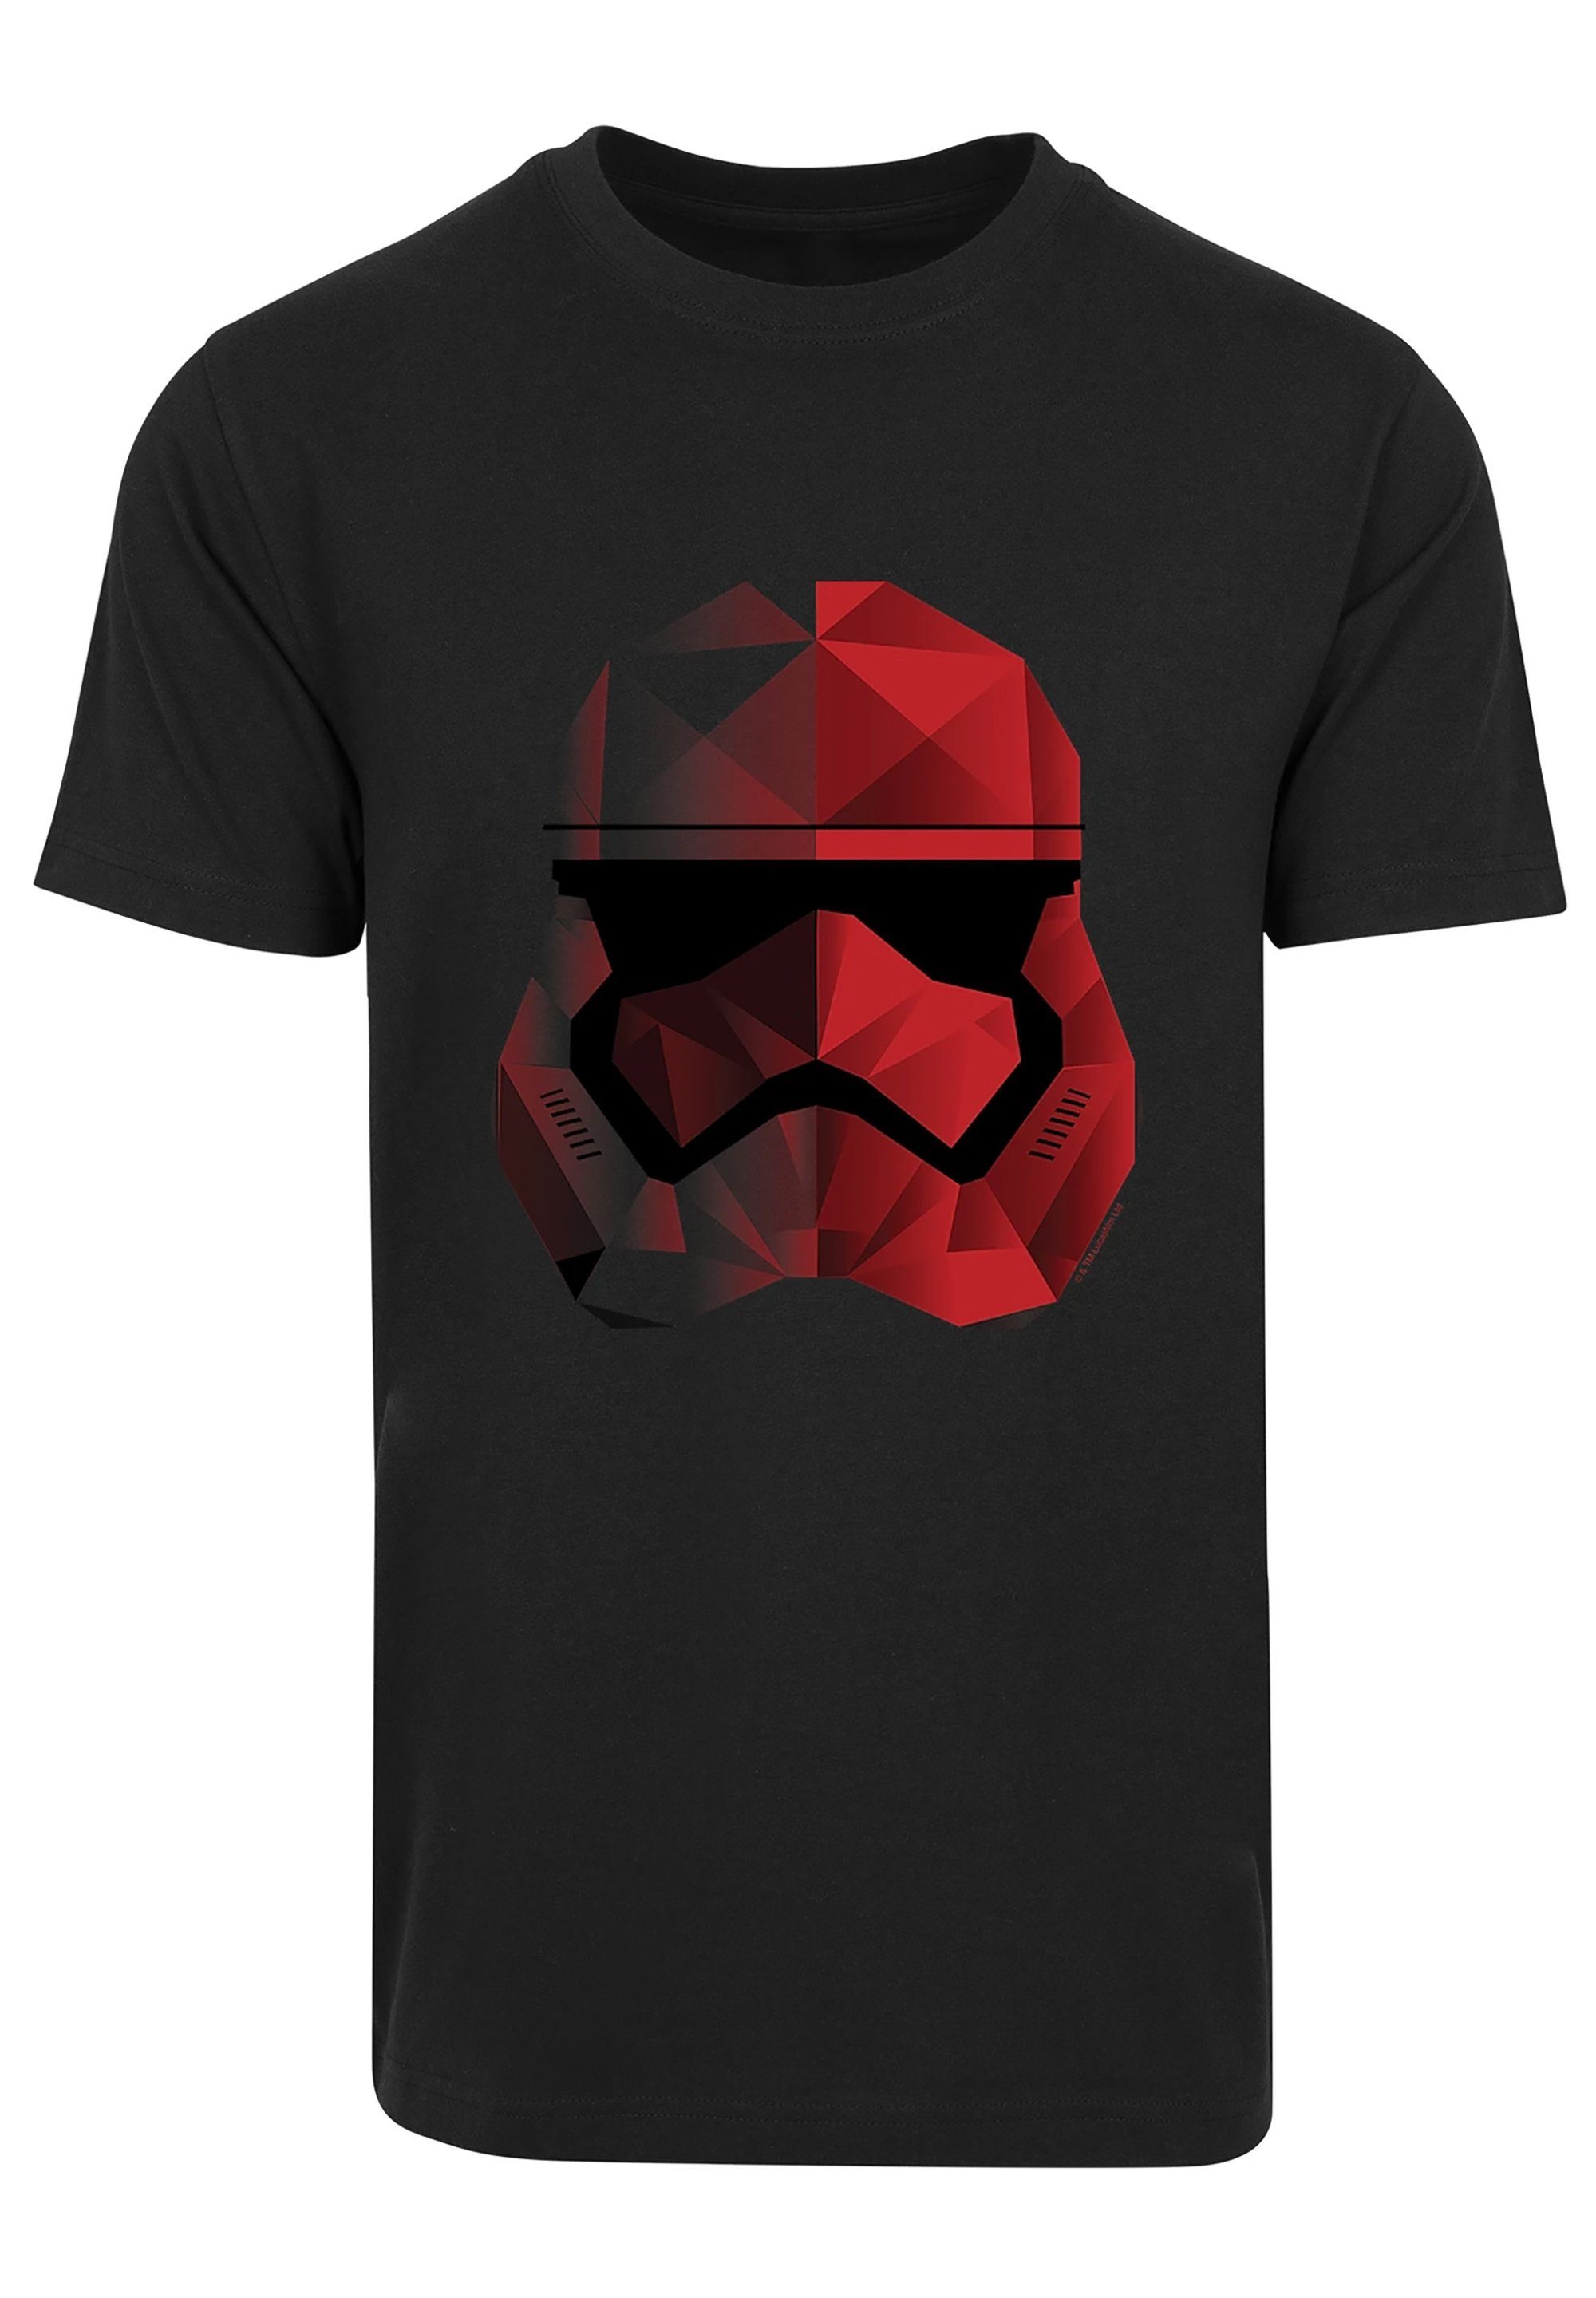 Last F4NT4STIC Cubist schwarz Fan Print Jedi The Merch T-Shirt Helm Star Stromtrooper Wars